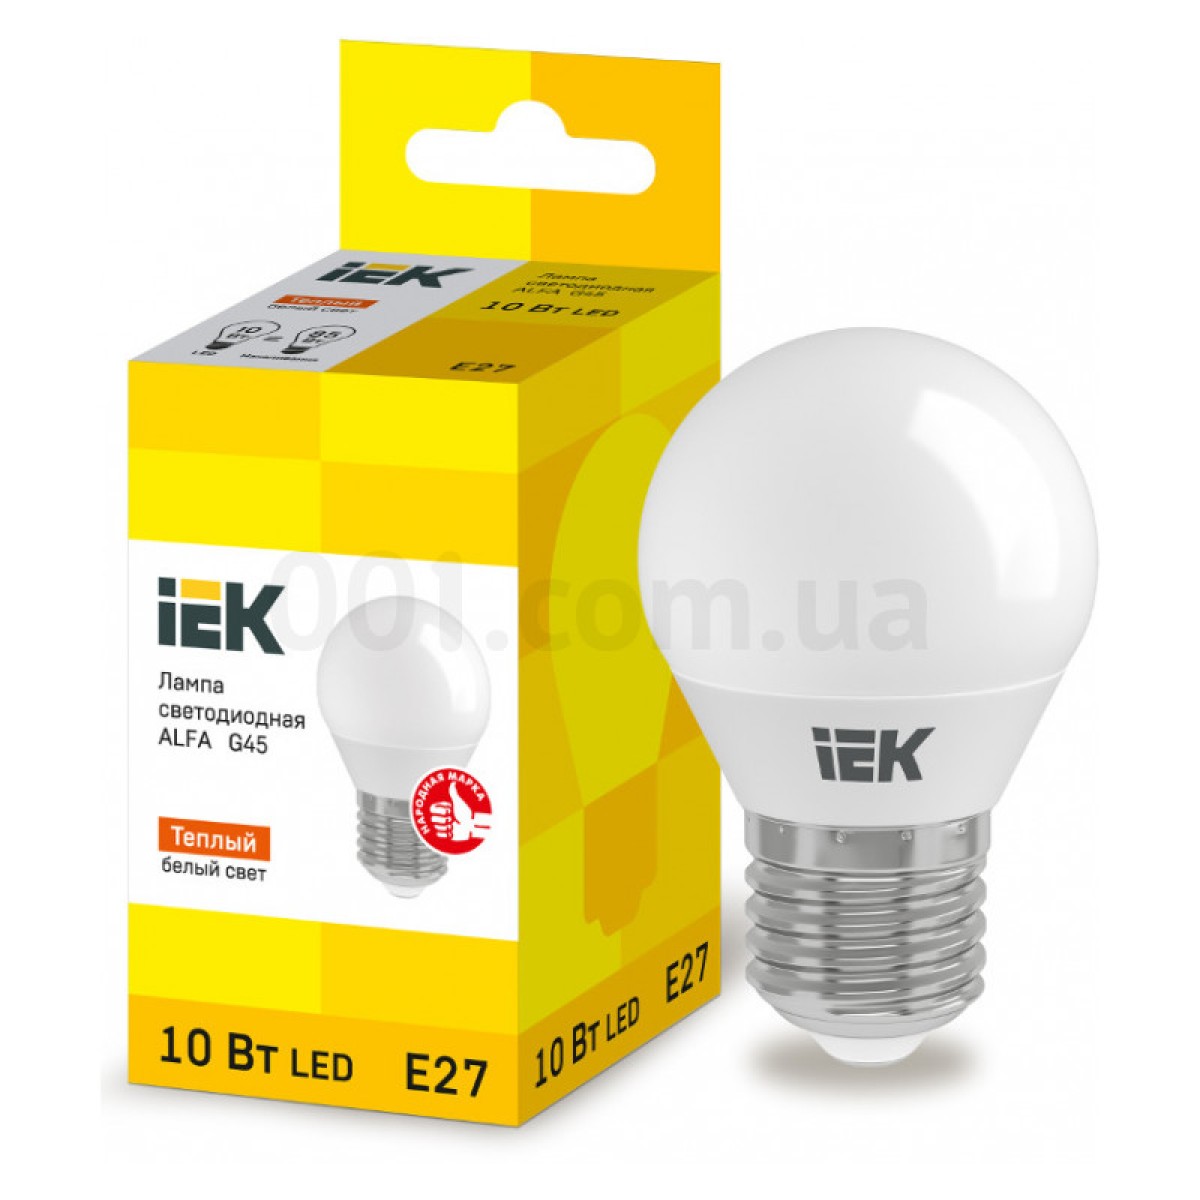 Світлодіодна лампа LED ALFA G45 (куля) 10 Вт 230В 3000К E27, IEK 256_256.jpg